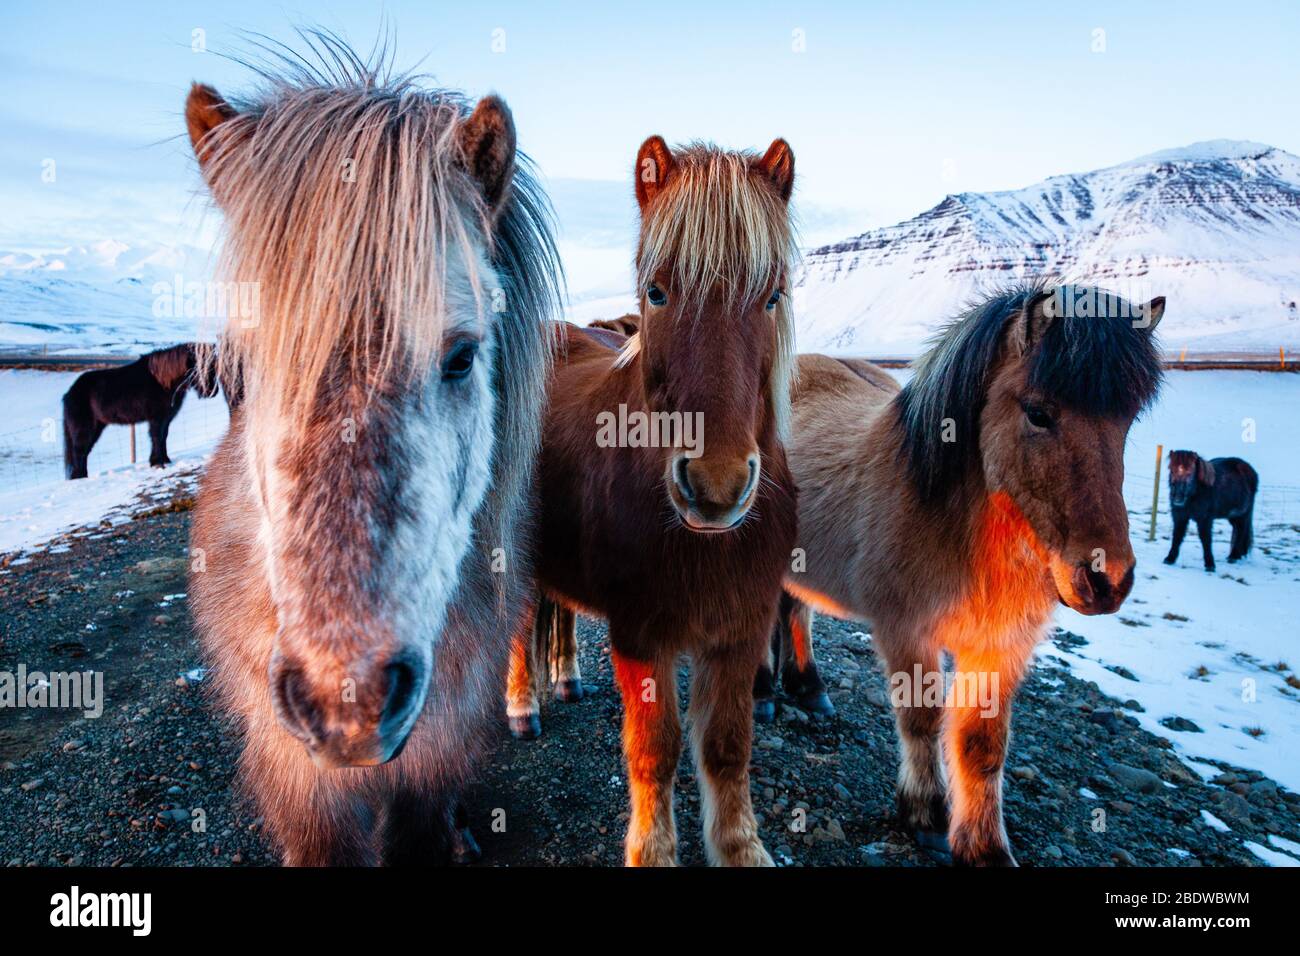 Gros plan de trois chevaux islandais (Equus ferus cavallus) au coucher du soleil dans le paysage enneigé islandais, Islande Banque D'Images